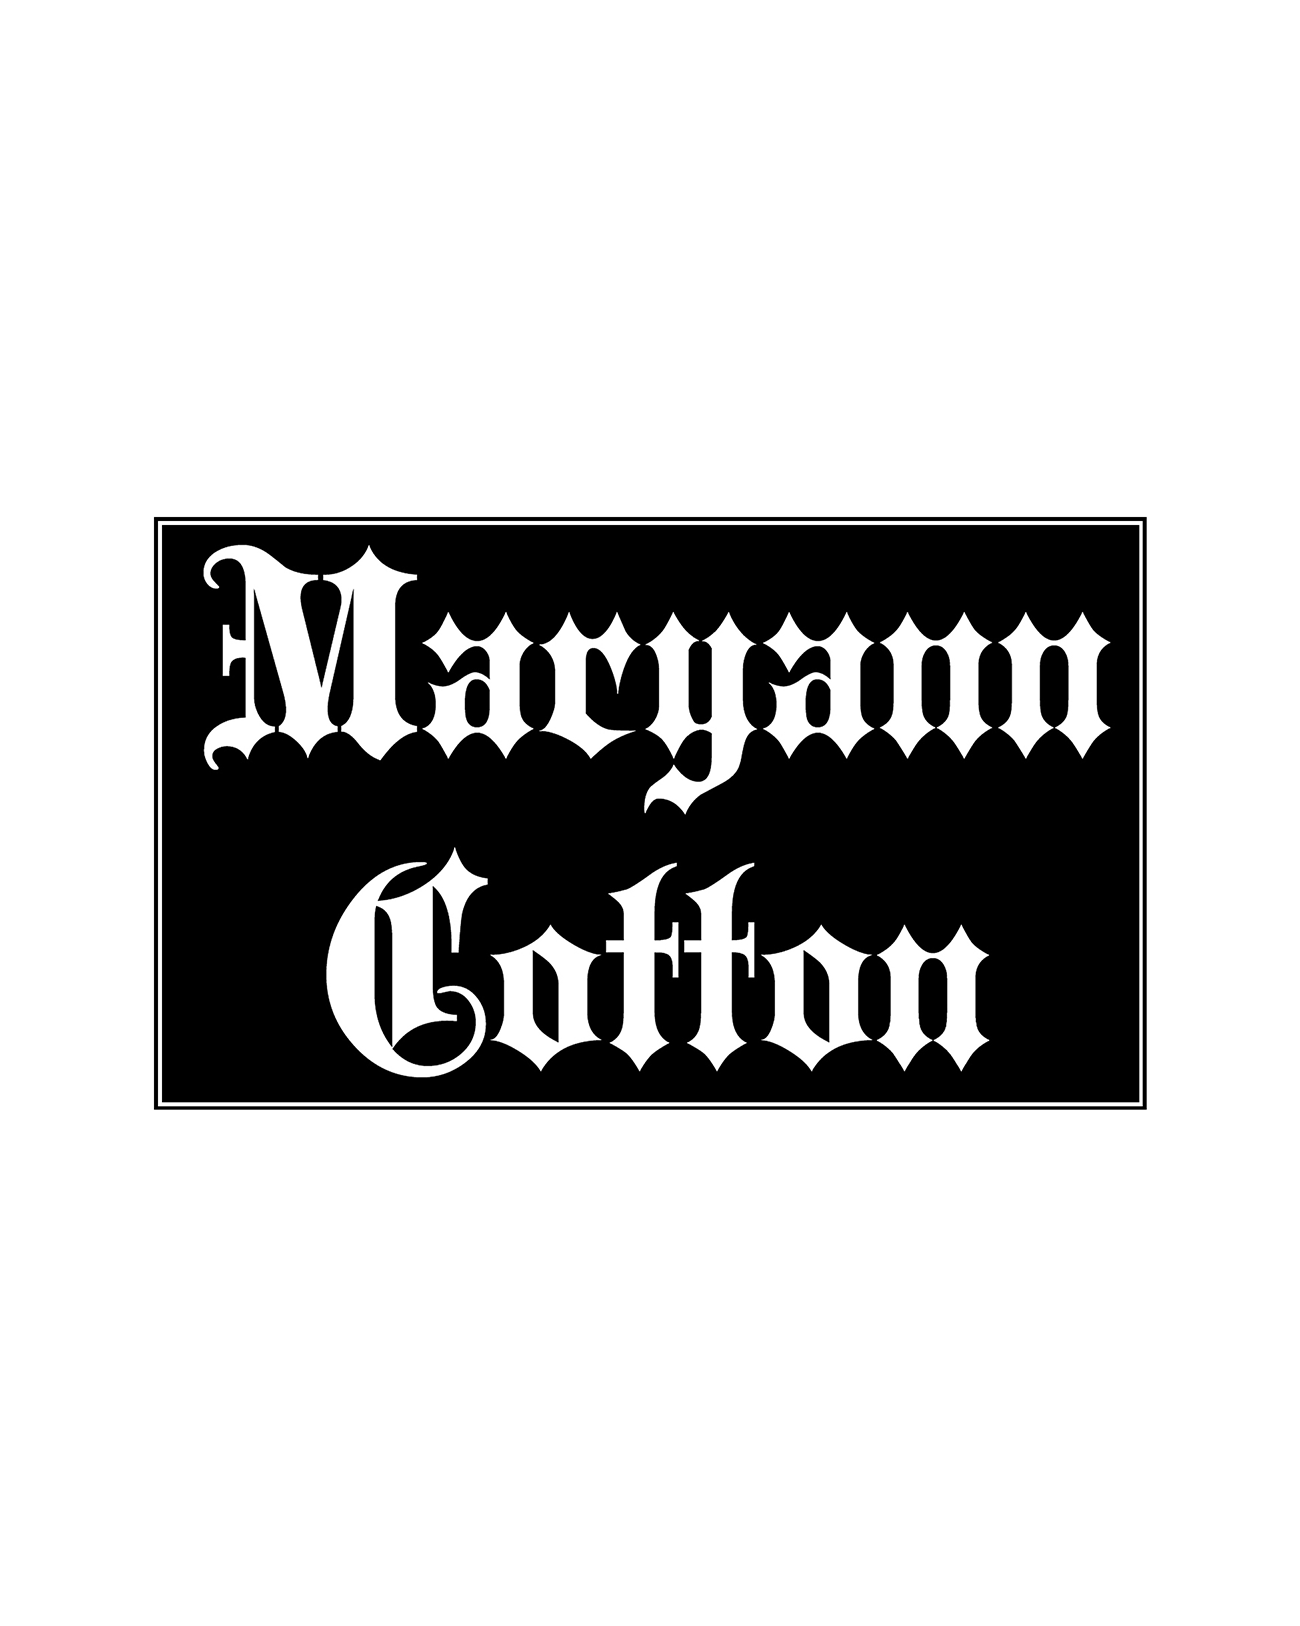 Maryann Cotton Sticker 5x3